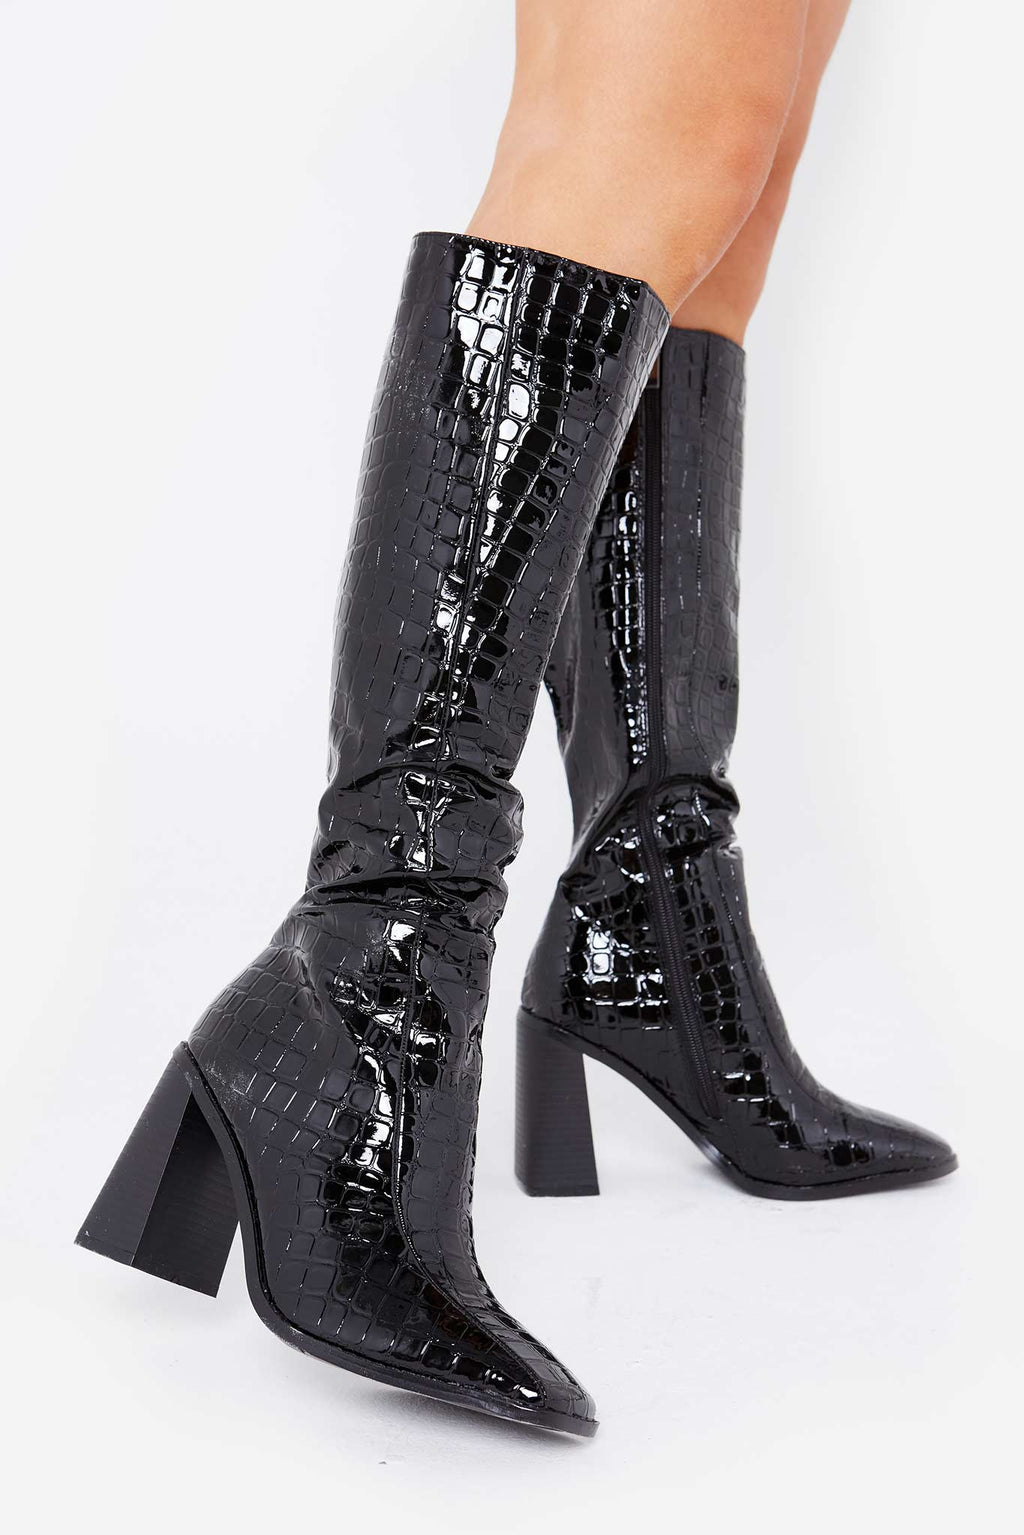 croc calf boots